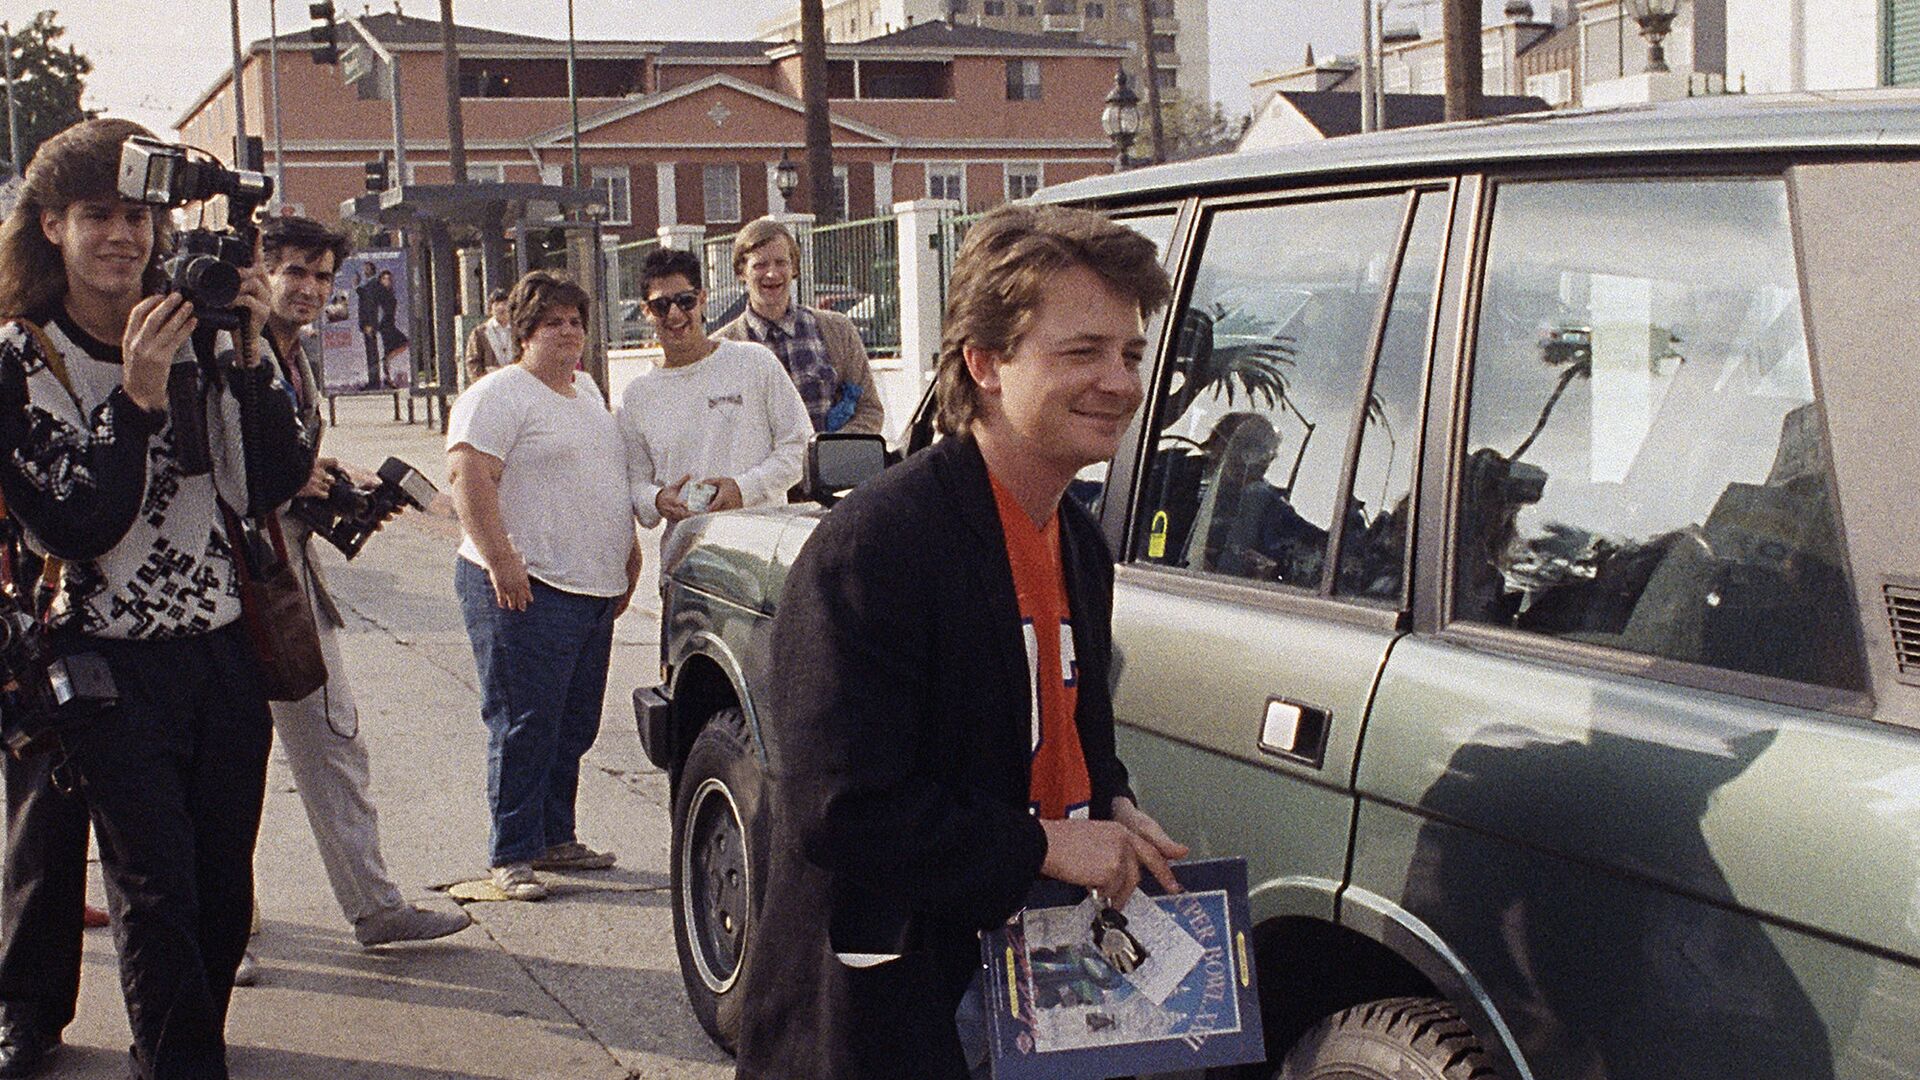 Актер Майкл Джей Фокс около своей машины в Голливуде. 1988 год  - РИА Новости, 1920, 30.11.2020